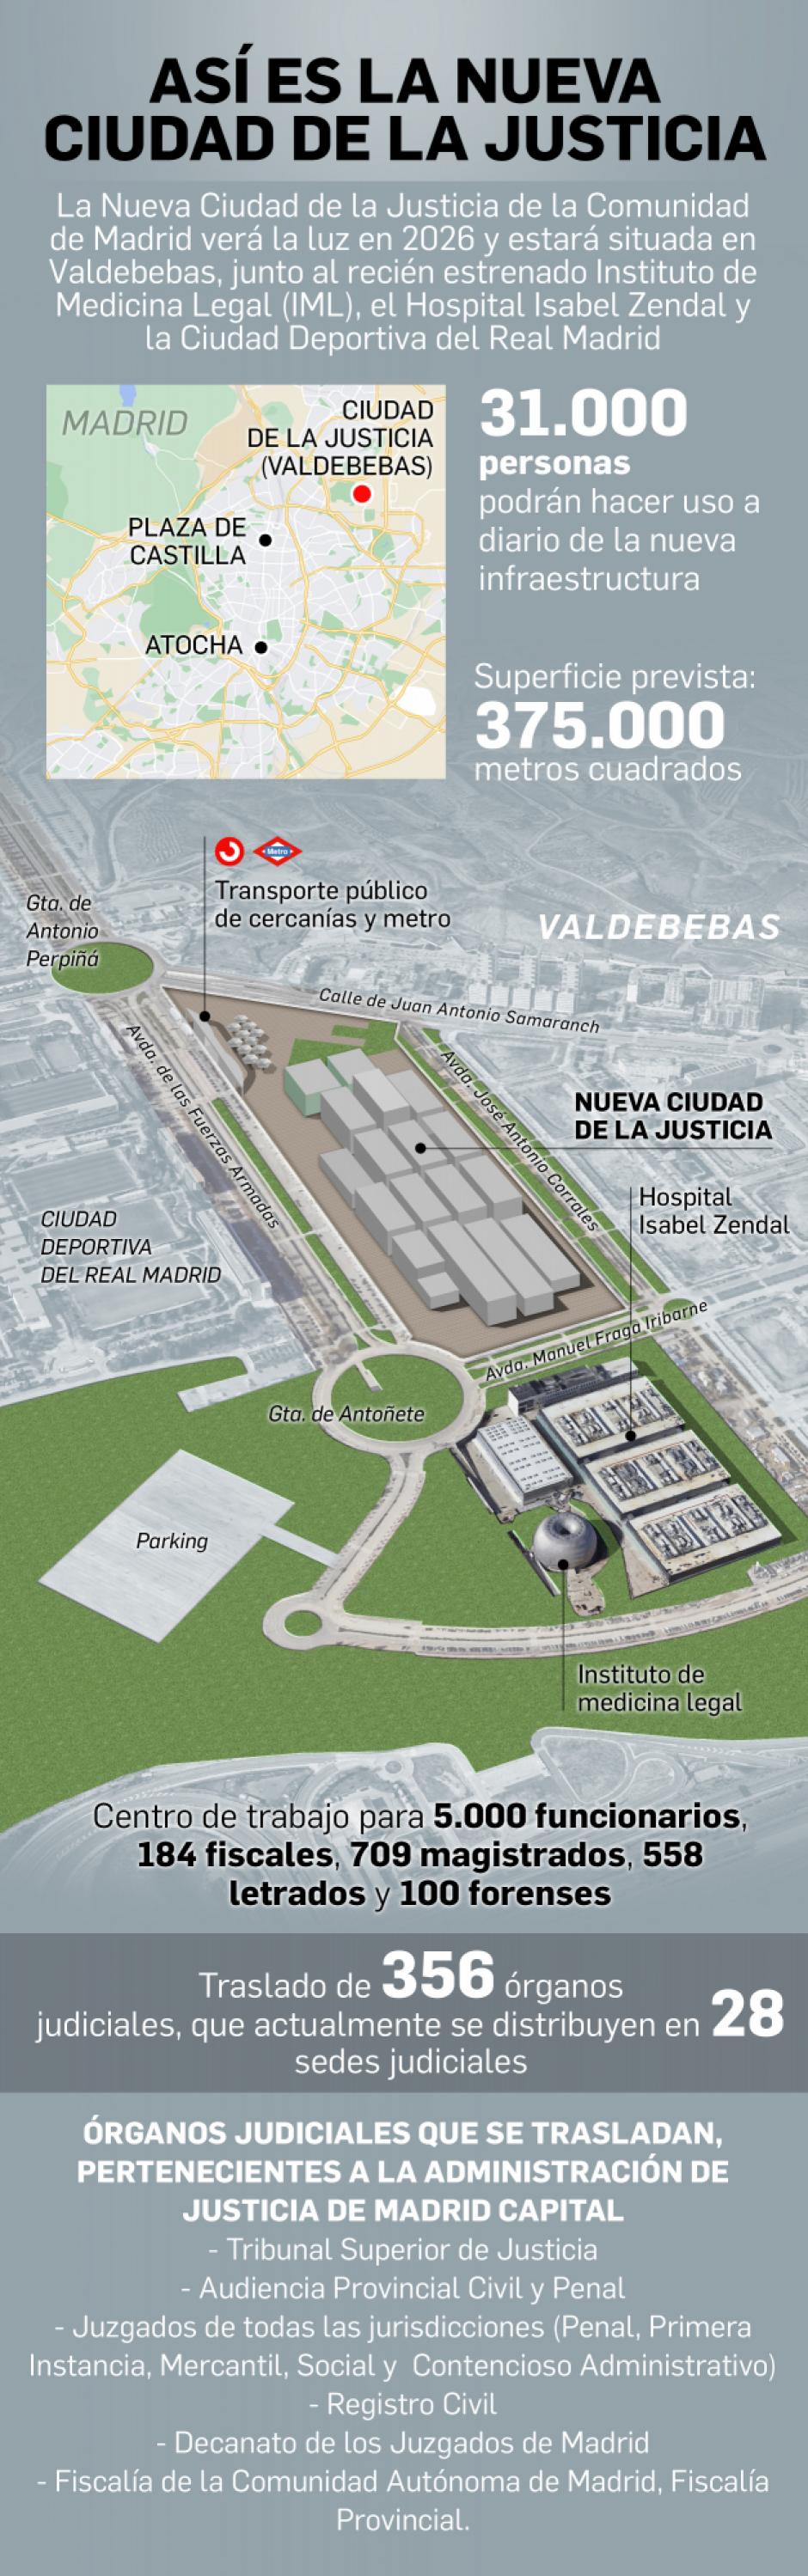 Infografía: ciudad de la Justicia de Madrid